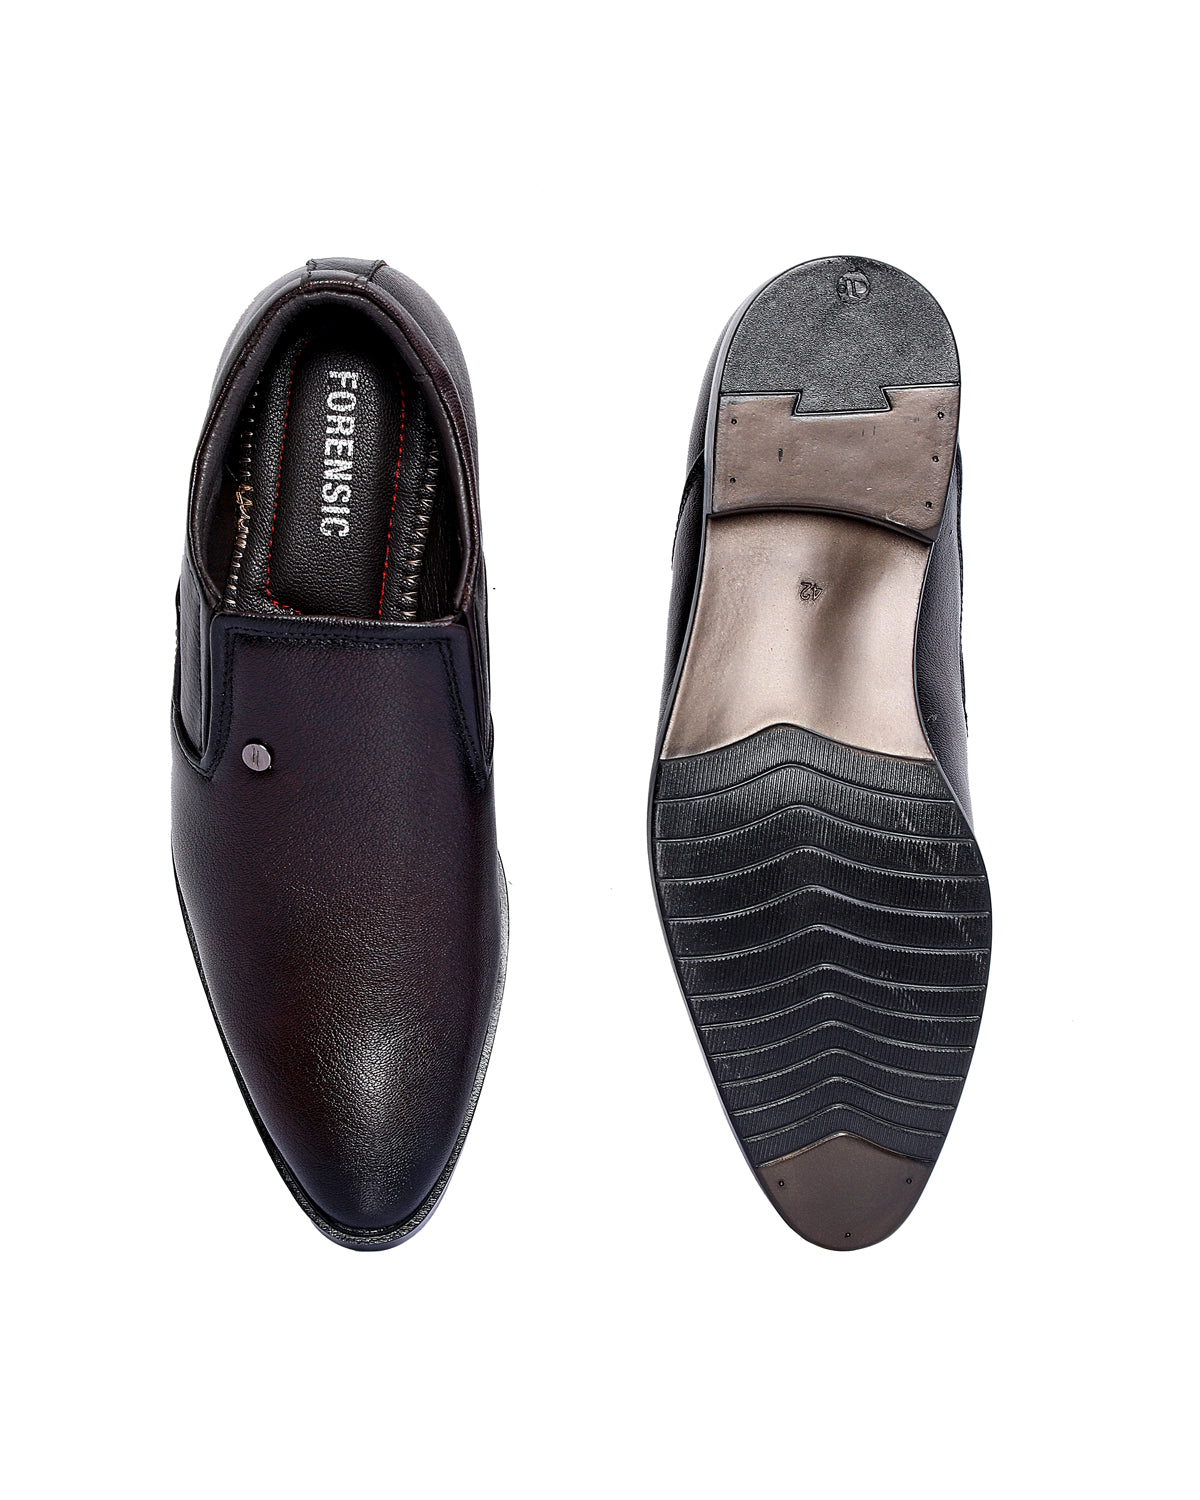 Leather Formal Shoes Slip On For Men  (Black)